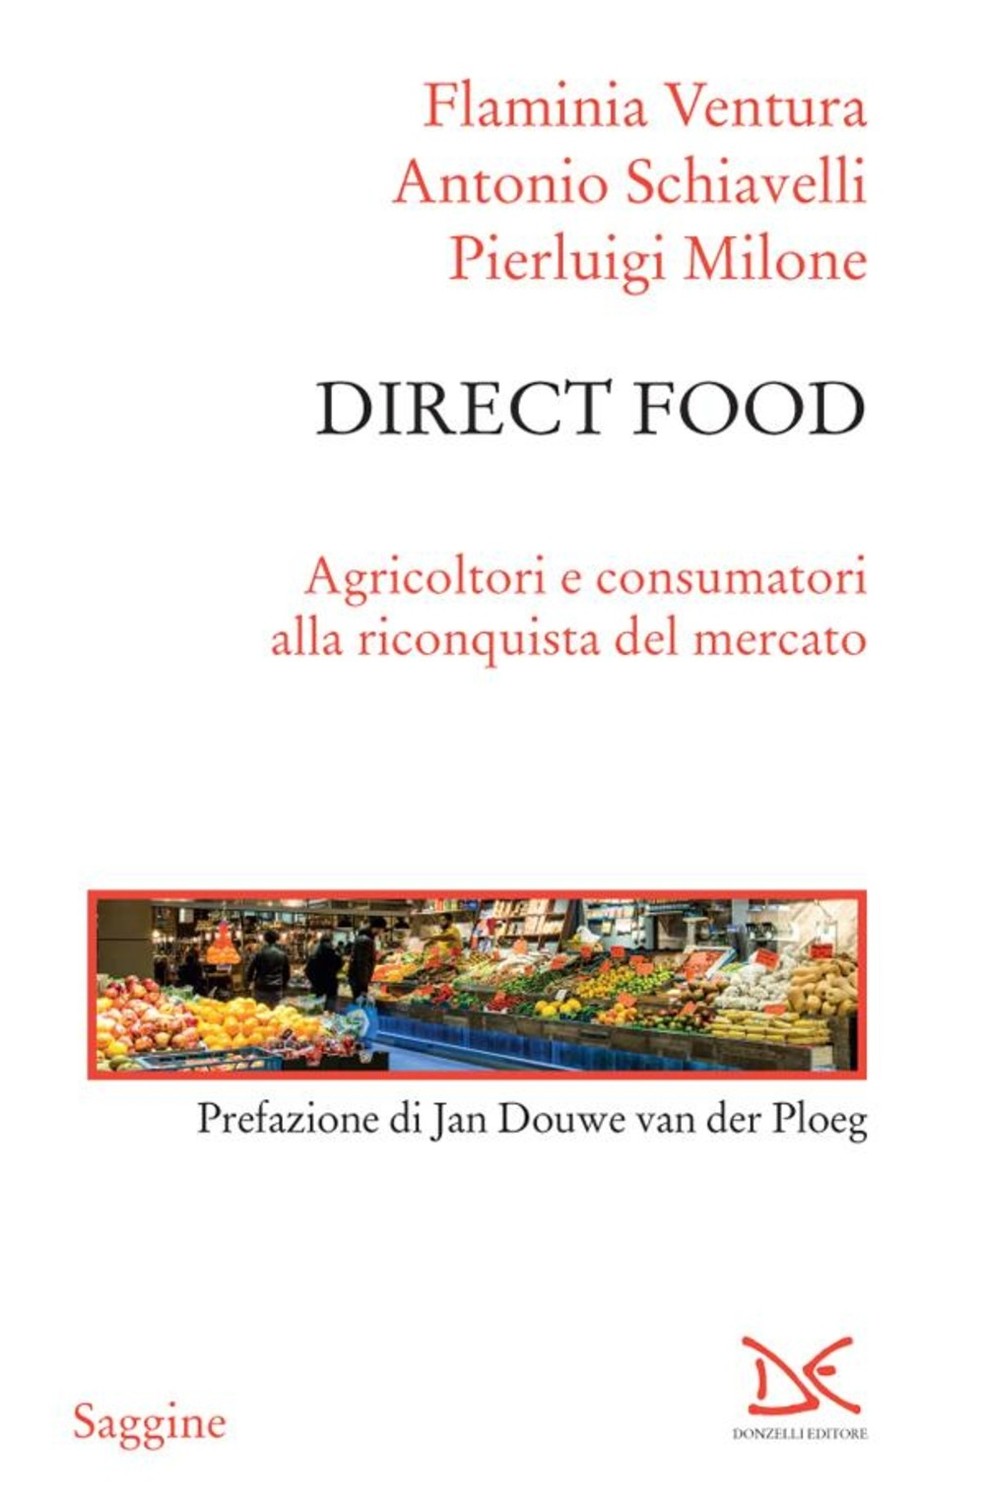 Direct Food, un libro sulle tendenze nella distribuzione alimentare